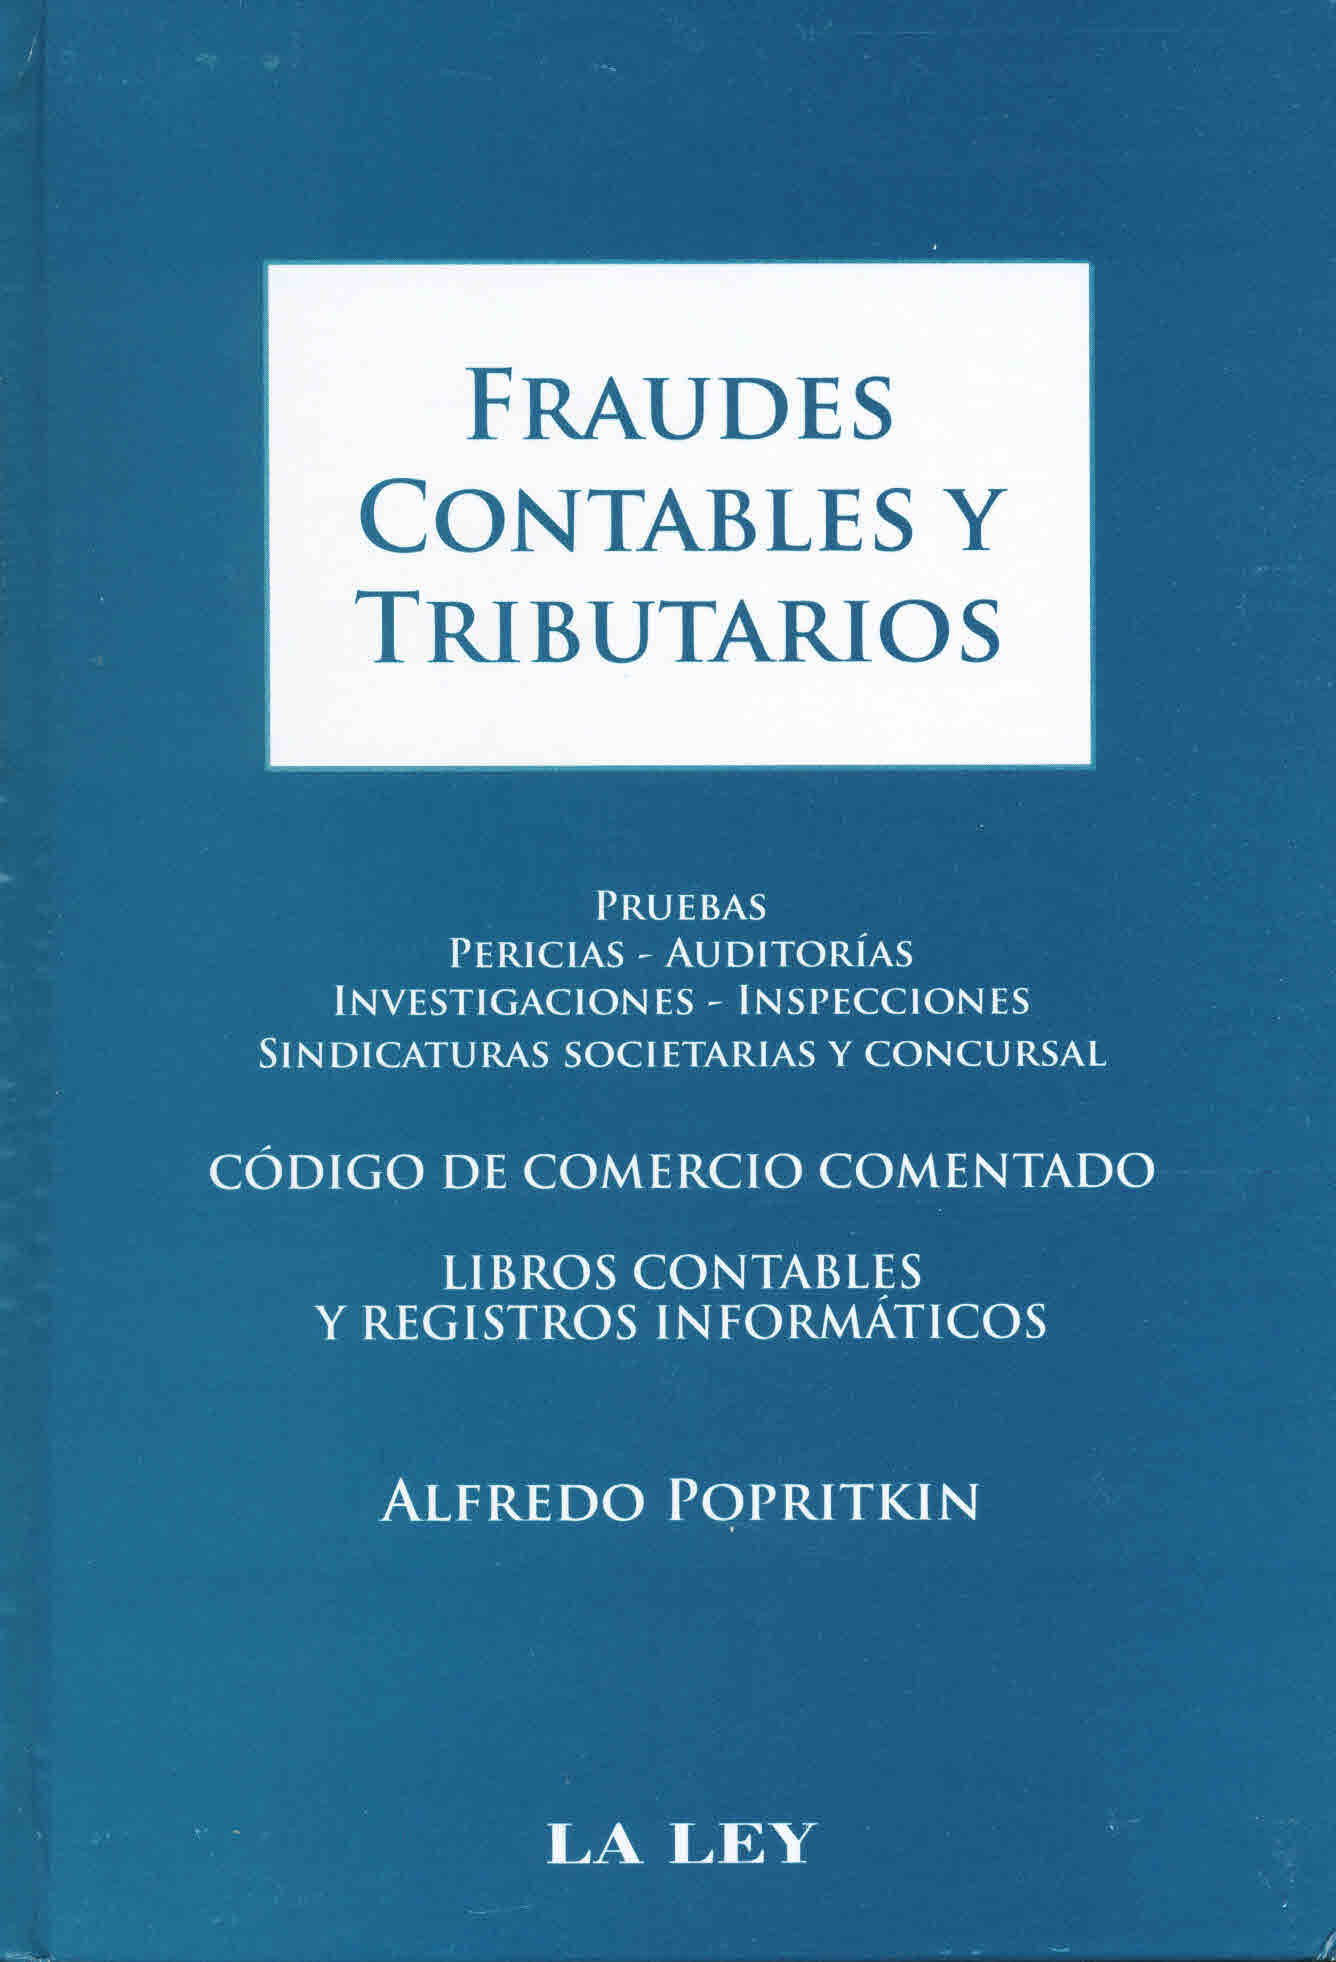 Fraudes contables y tributarios